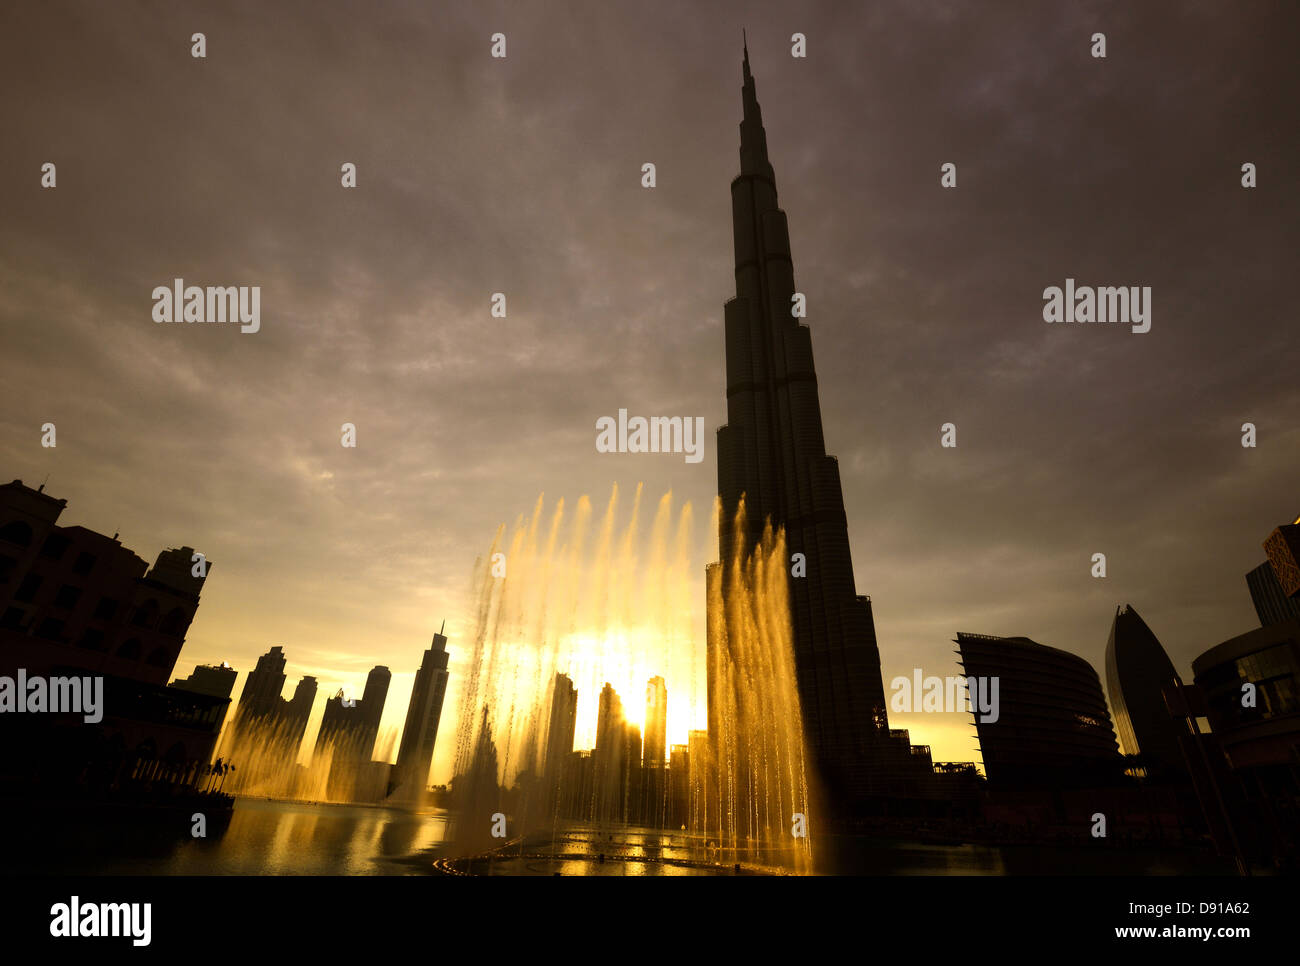 Wolkenkratzer Burj Khalifa, äußere des Burj Khalifa Skyscraper und Brunnen zeigen, Dubai, Vereinigte Arabische Emirate Arabische Mitte Stockfoto